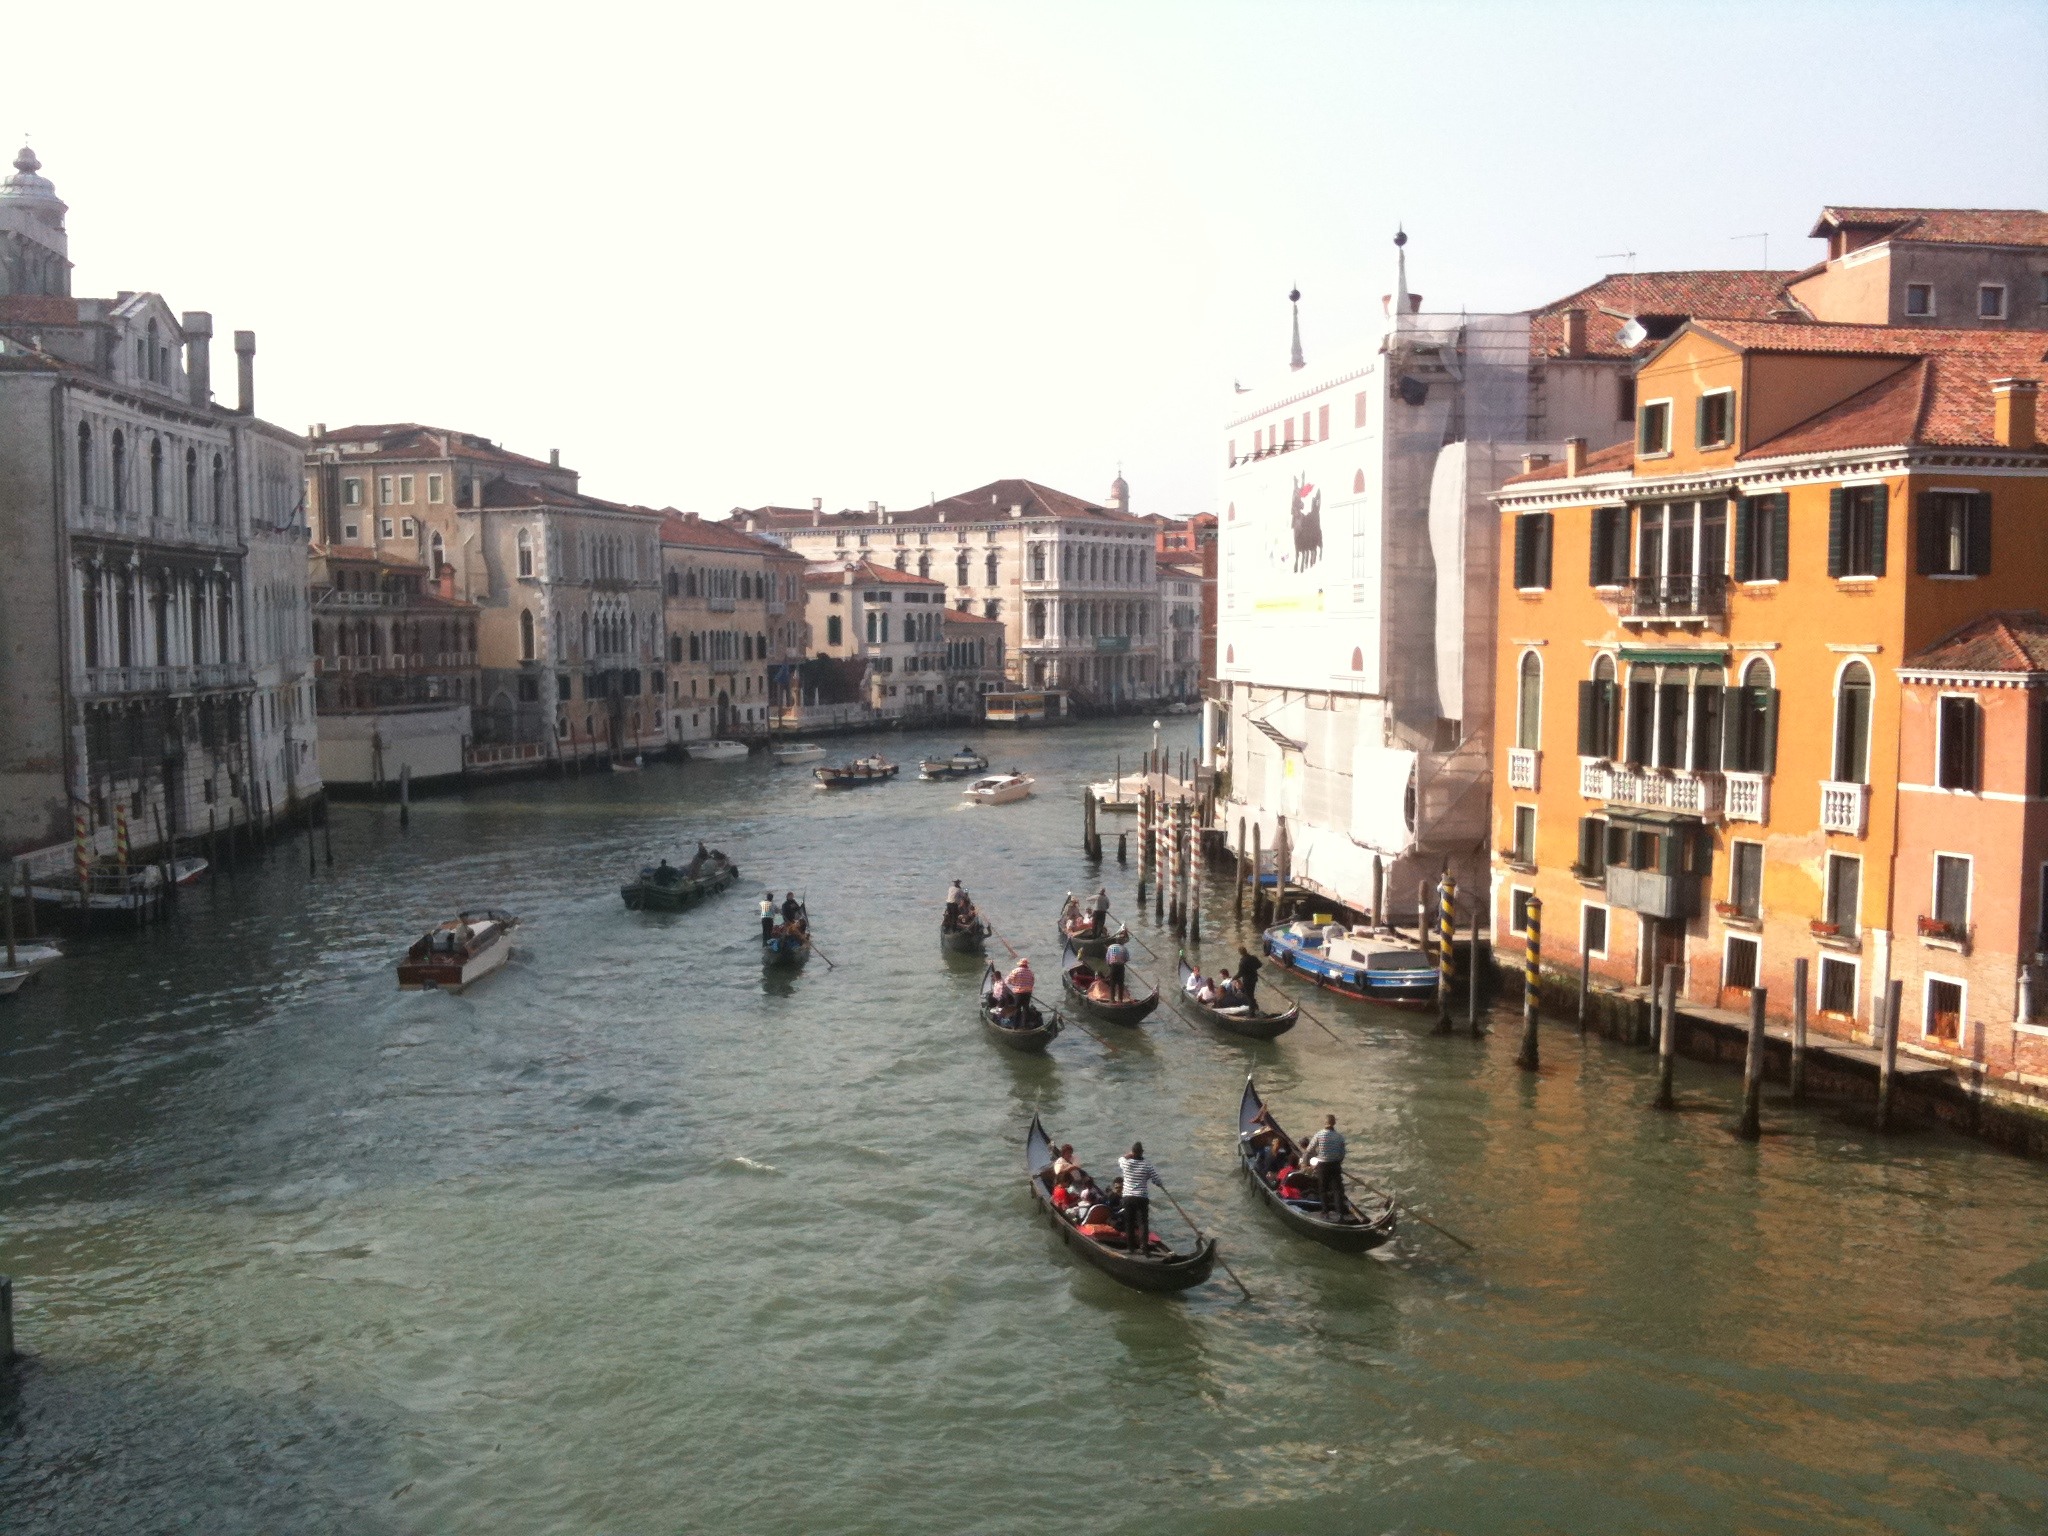 Venice - Mobile Photos - Day 6